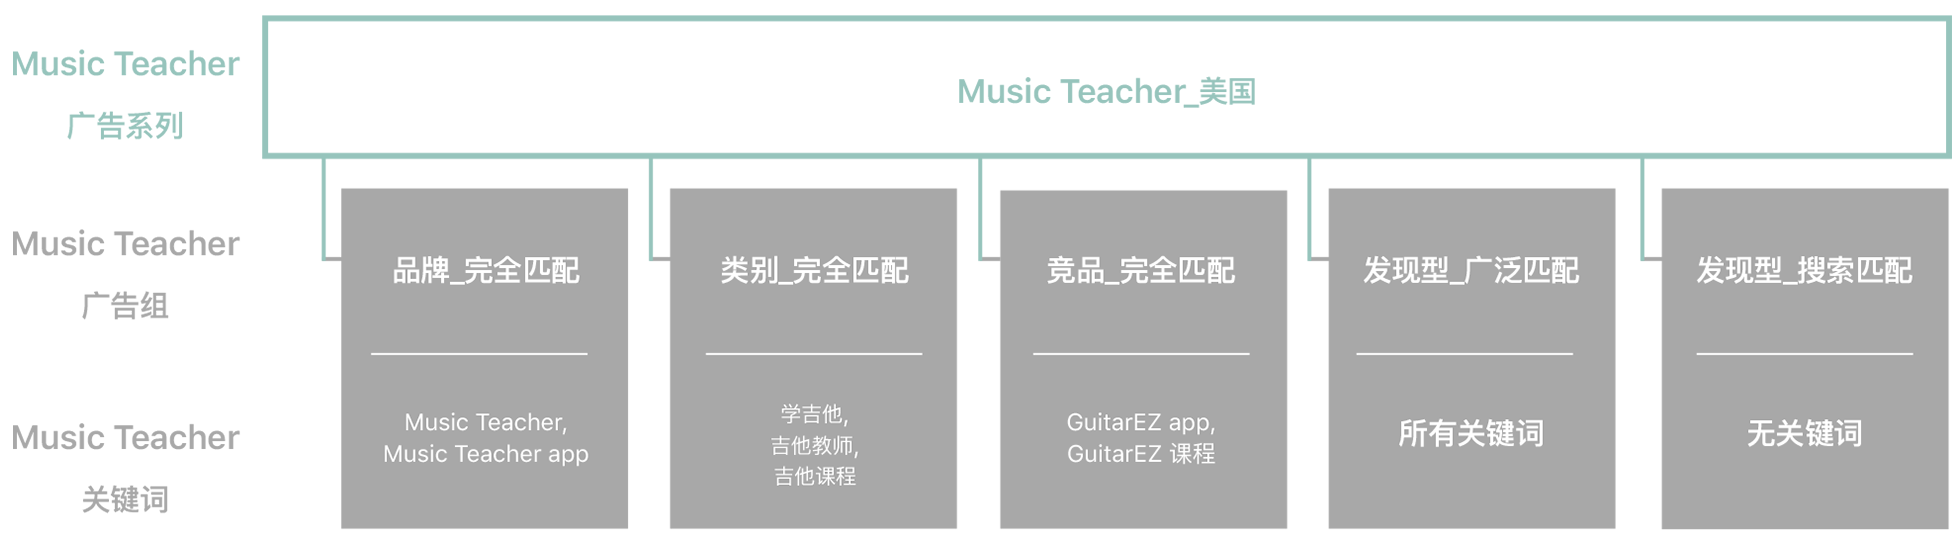 名为“Music Teacher_美国”的广告系列示例的图表。第一行是“Music Teacher 广告系列”，第二行是“Music Teacher 广告组”，第三行是“Music Teacher 关键词”。“Music Teacher_美国”广告系列与以下广告组和关键词相关联：“品牌_完全匹配”广告组，关键词为“Music Teacher”和“Music Teacher app”；“类别_完全匹配”广告组，关键词为“学习吉他”、“吉他老师”和“吉他课程”；“竞品_完全匹配”广告组，关键词为“GuitarEZ app”和“GuitarEZ 课程”；“发现型_广泛匹配”广告组，选择了“所有关键词”；以及“发现型_搜索匹配”广告组，选择了“无关键词”。